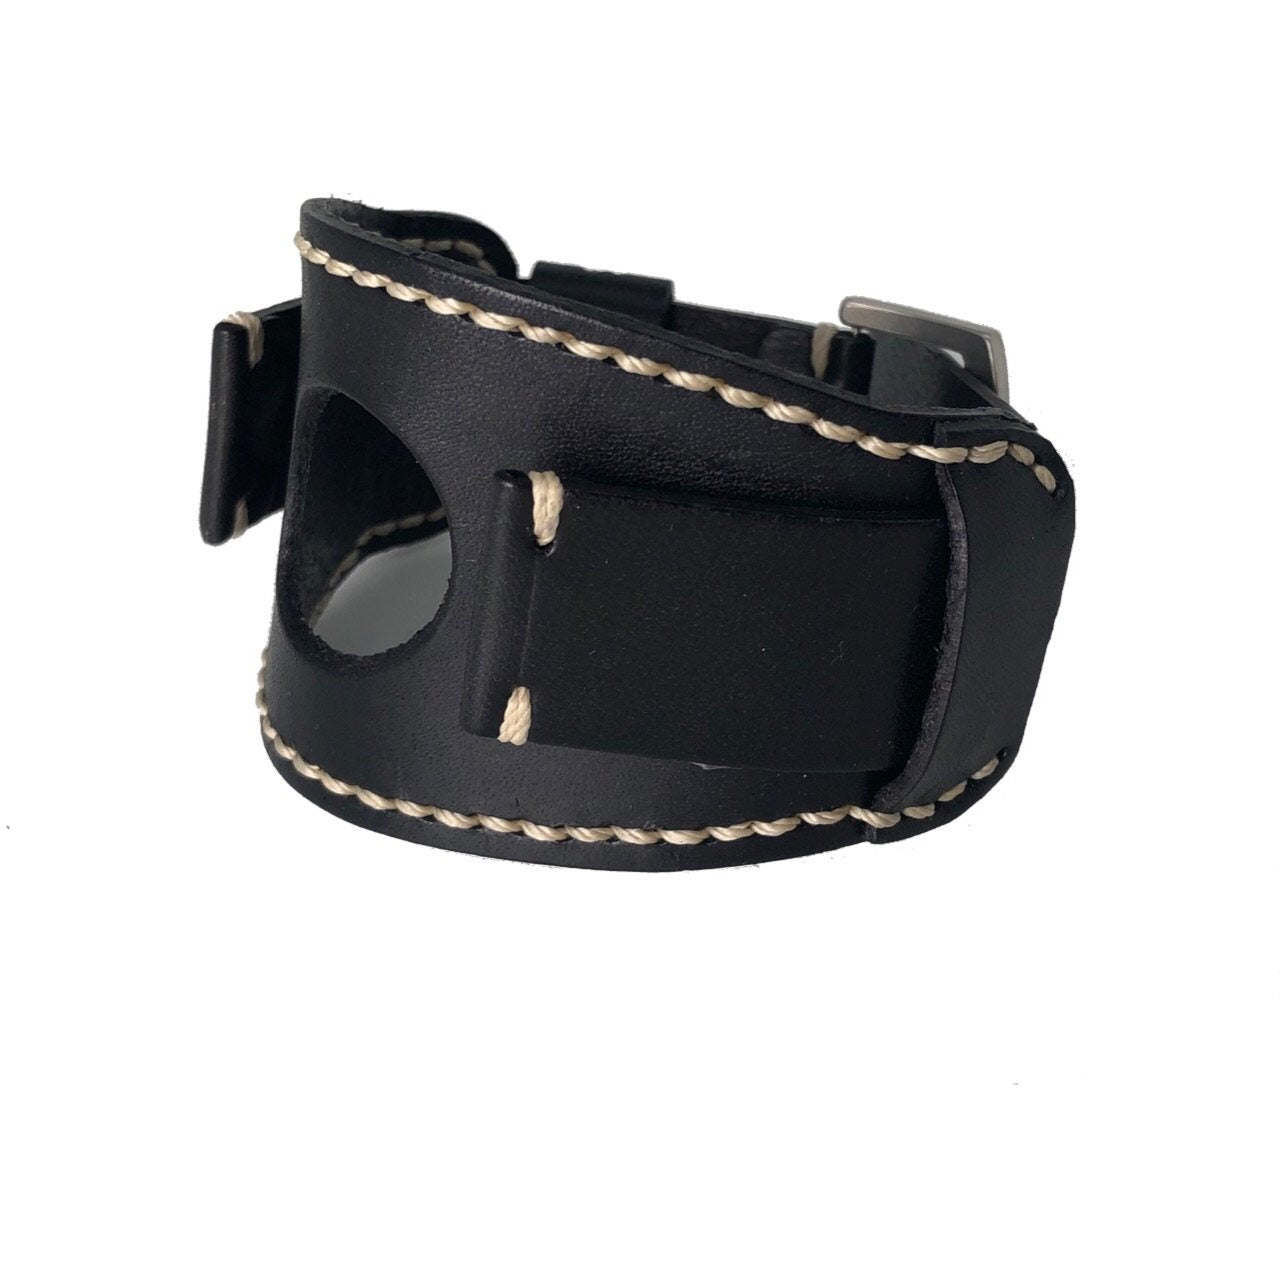 Smart Watch White Stitched Dark Brown Leather Cuff